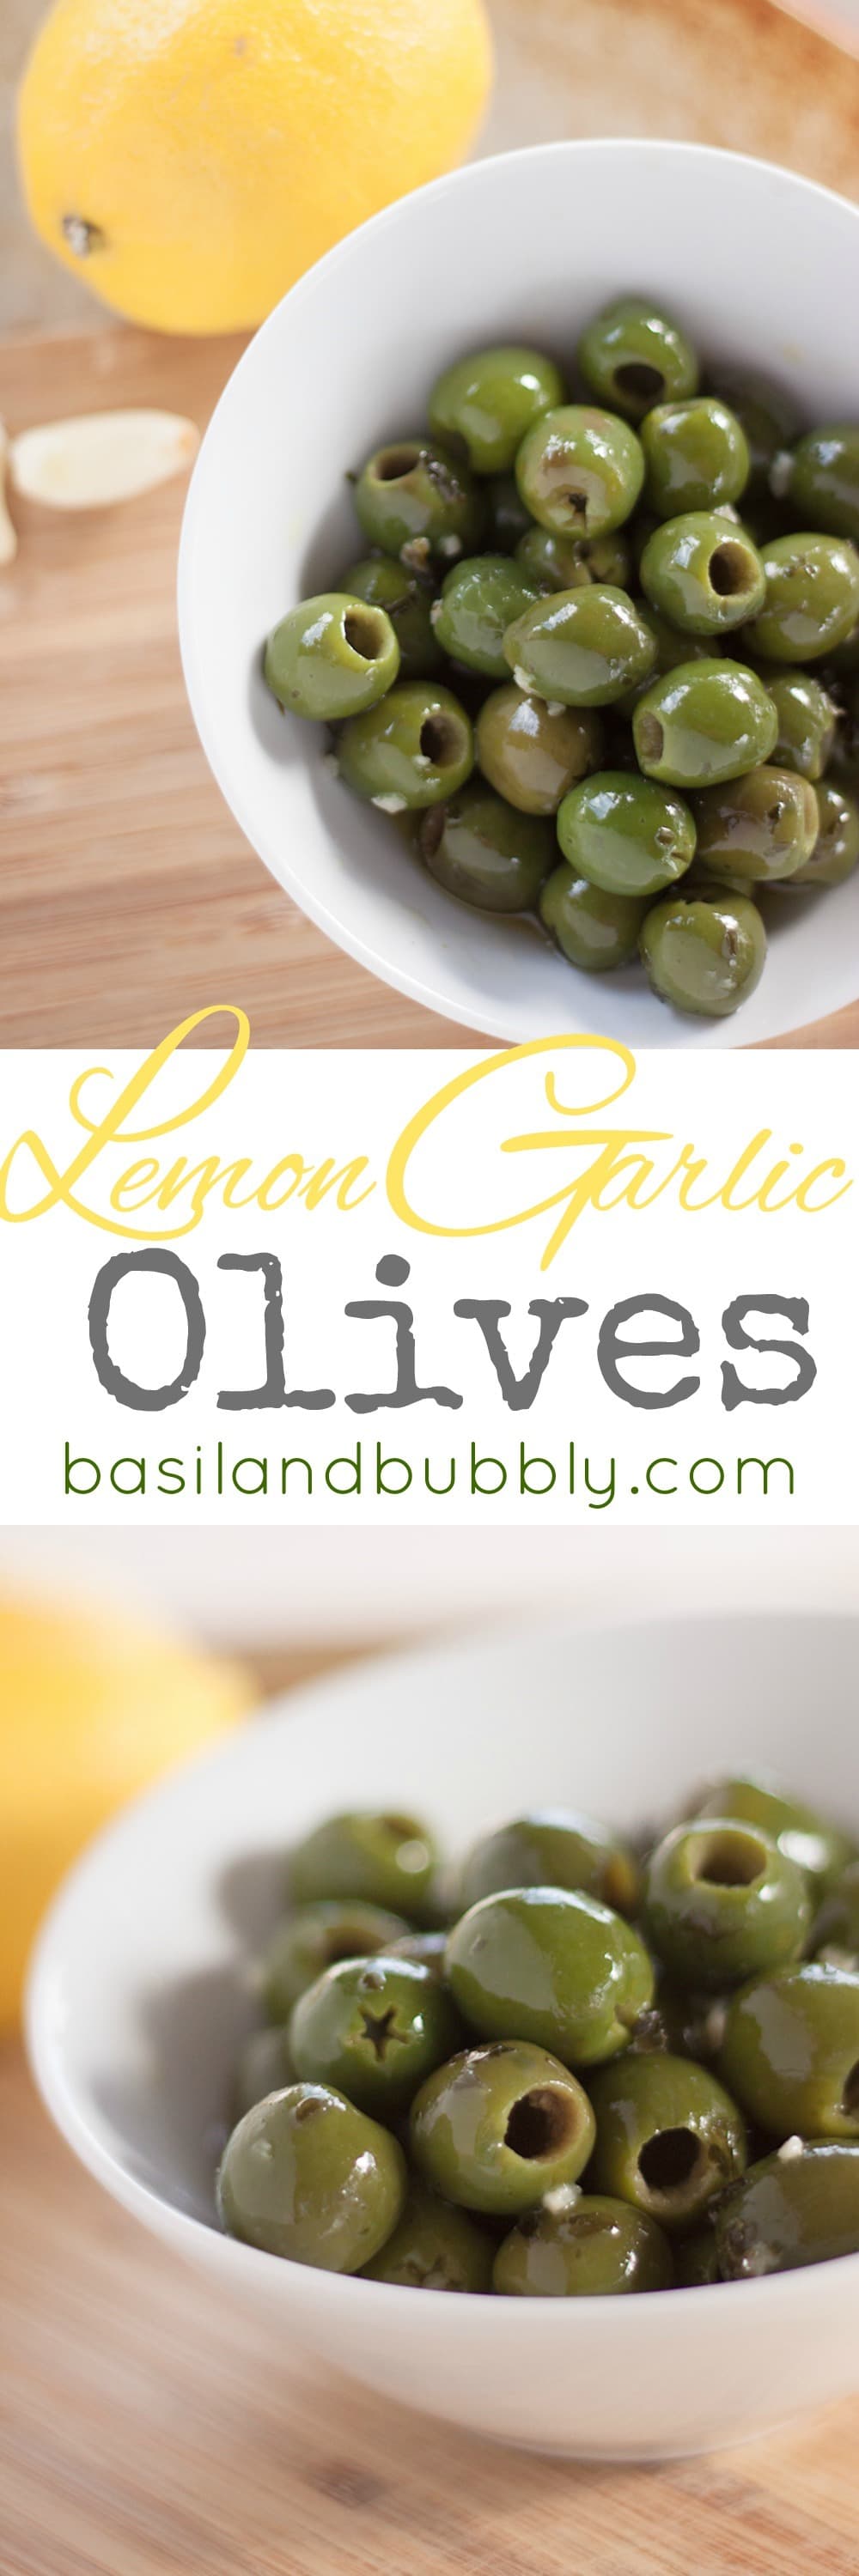 Lemon Garlic Olives - Basil And Bubbly